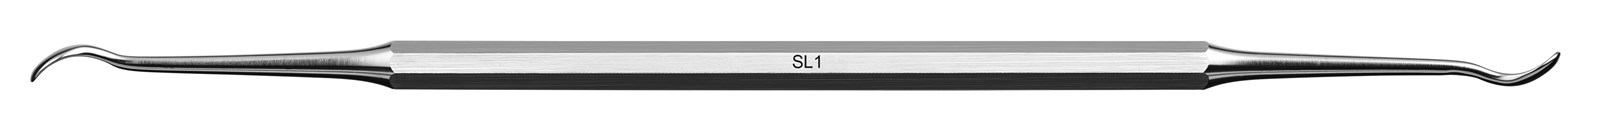 Instrument pro sinus lift - SL1, ADEP tmavě modrý